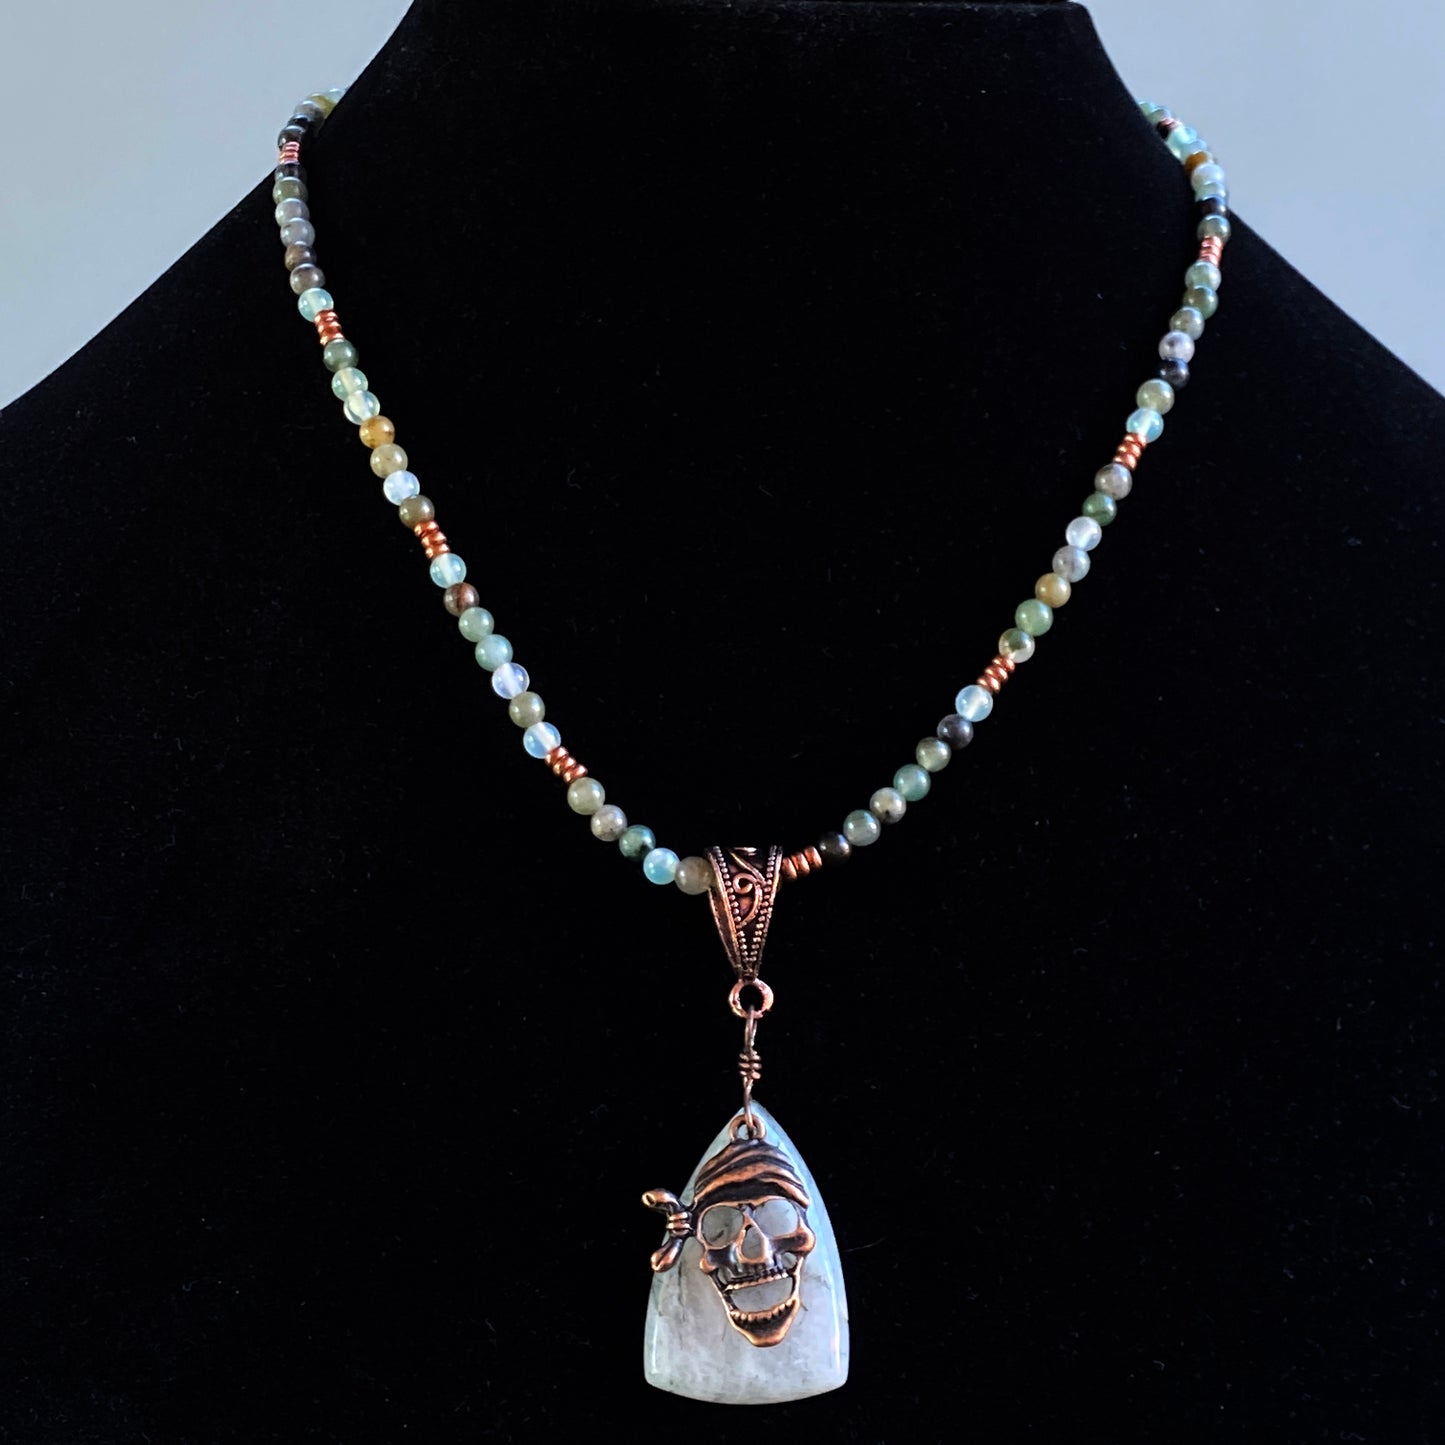 Prehnite gemstone with Copper Pirate Skull pendant necklace